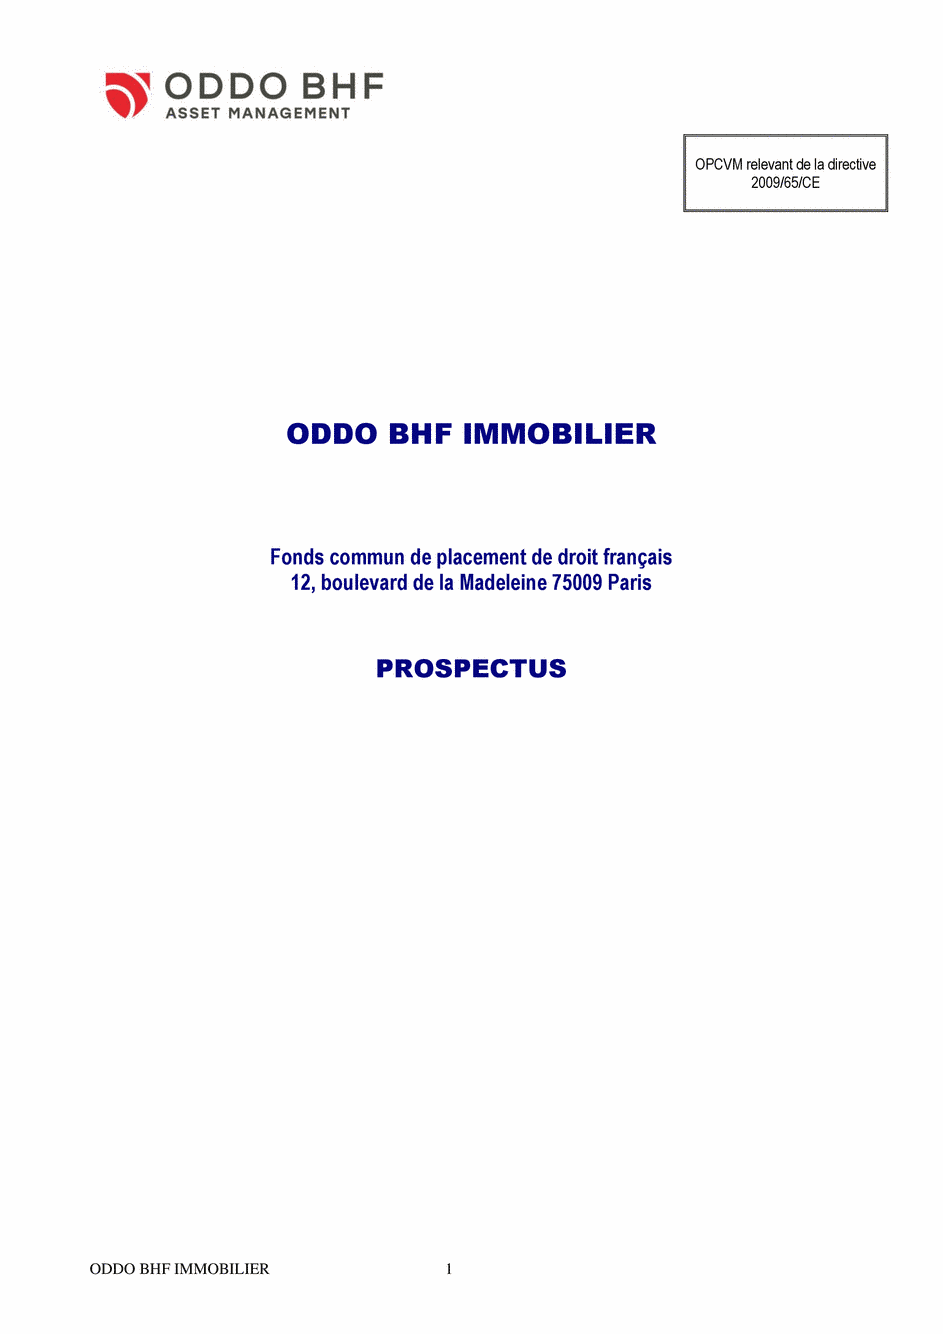 Prospectus ODDO BHF IMMOBILIER GC-EUR - 31/12/2020 - Français